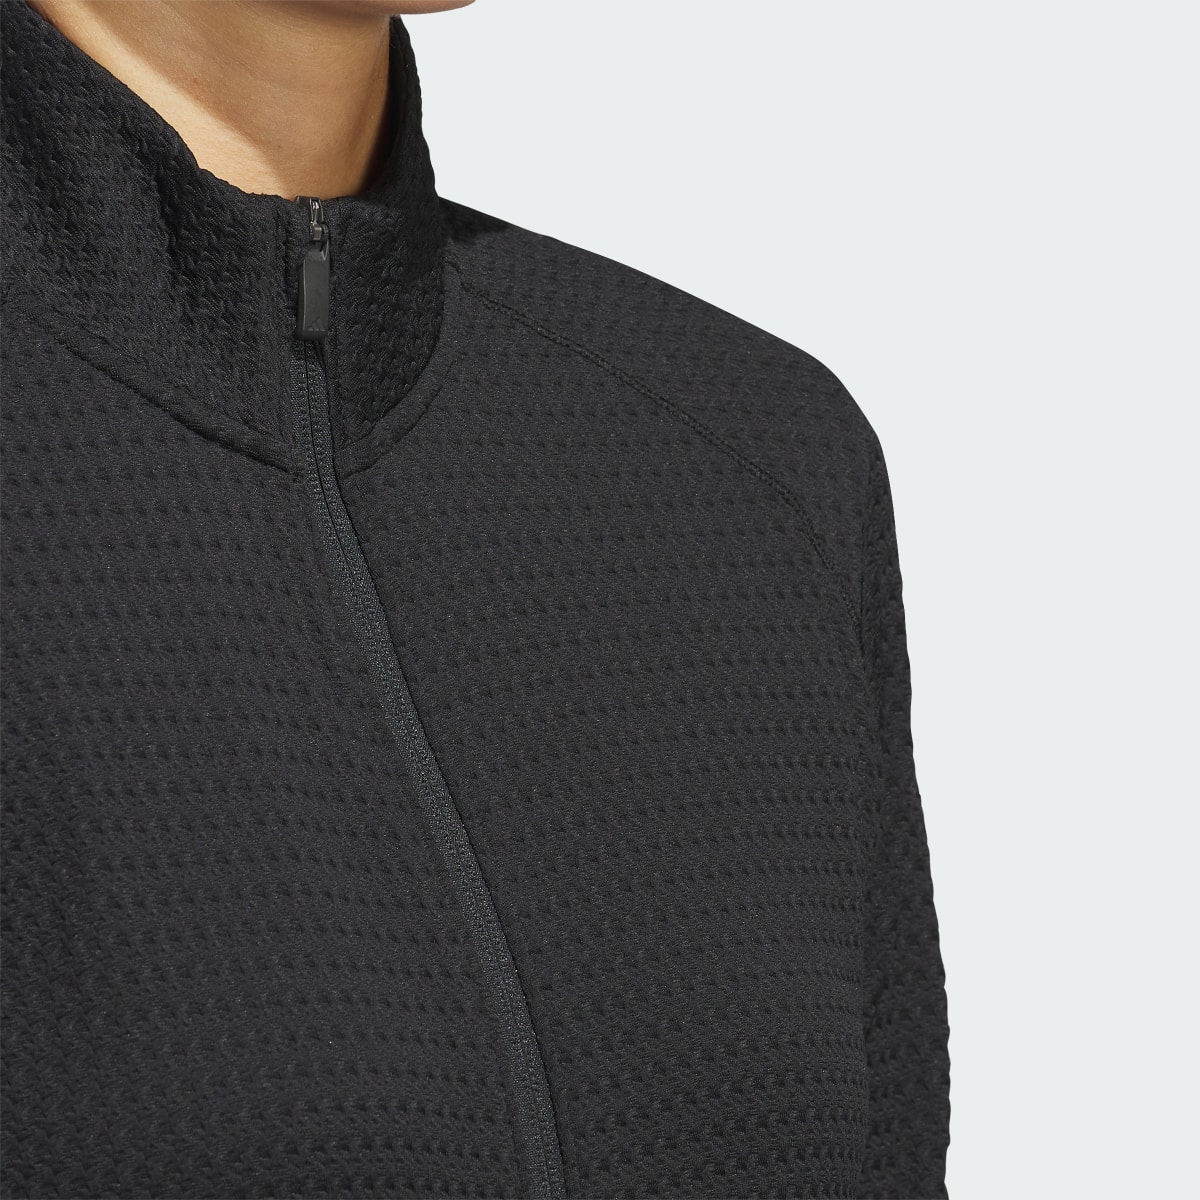 Adidas Ultimate365 Textured Jacket. 6